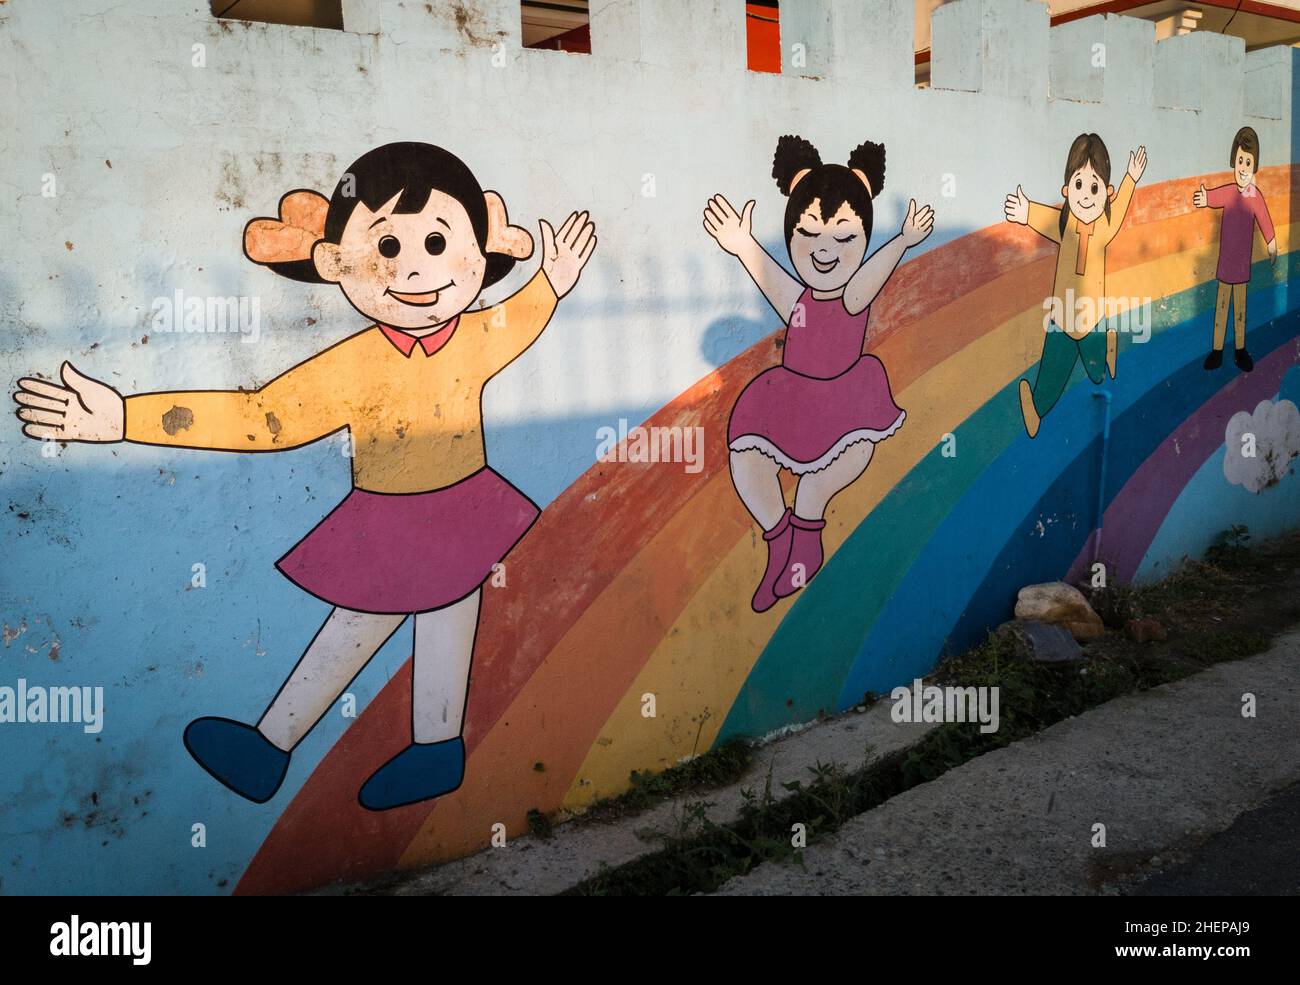 Editoriale datato : 8th maggio 2020 luogo dehradun, INDIA. Un'opera d'arte colorata sul muro della scuola materna. Foto Stock